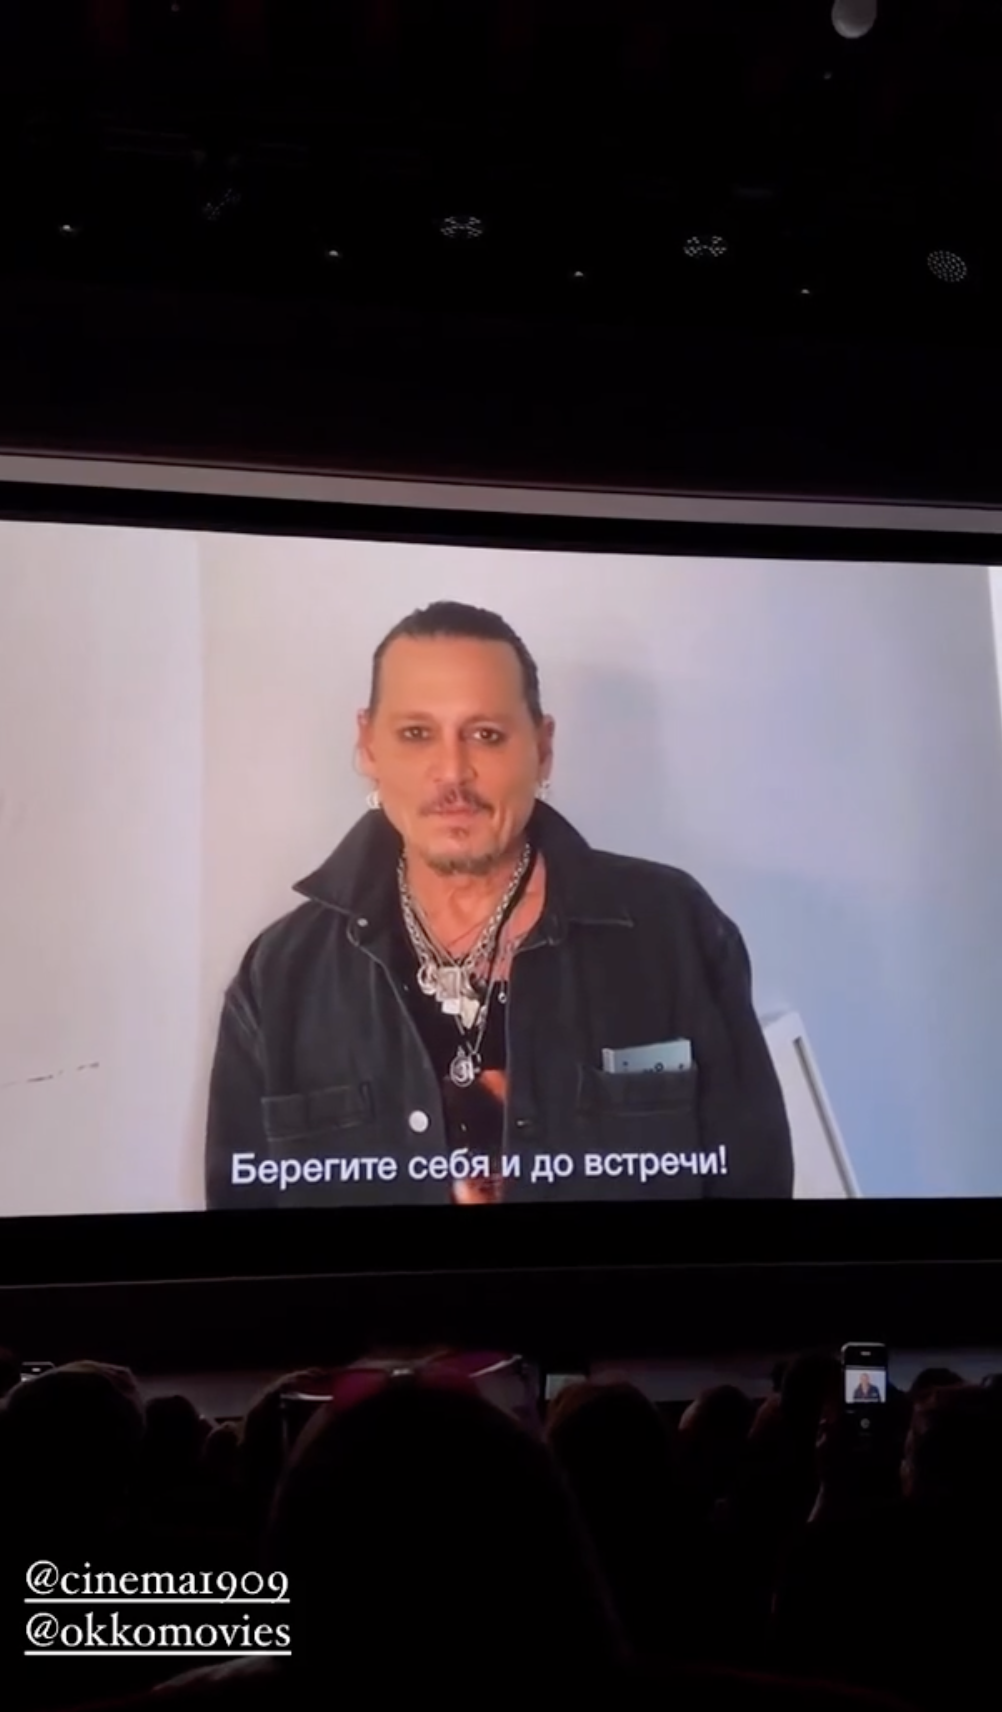 Джонни Депп обратился к россиянам с экрана и пожелал им "беречь себя" после слухов о визите в Россию